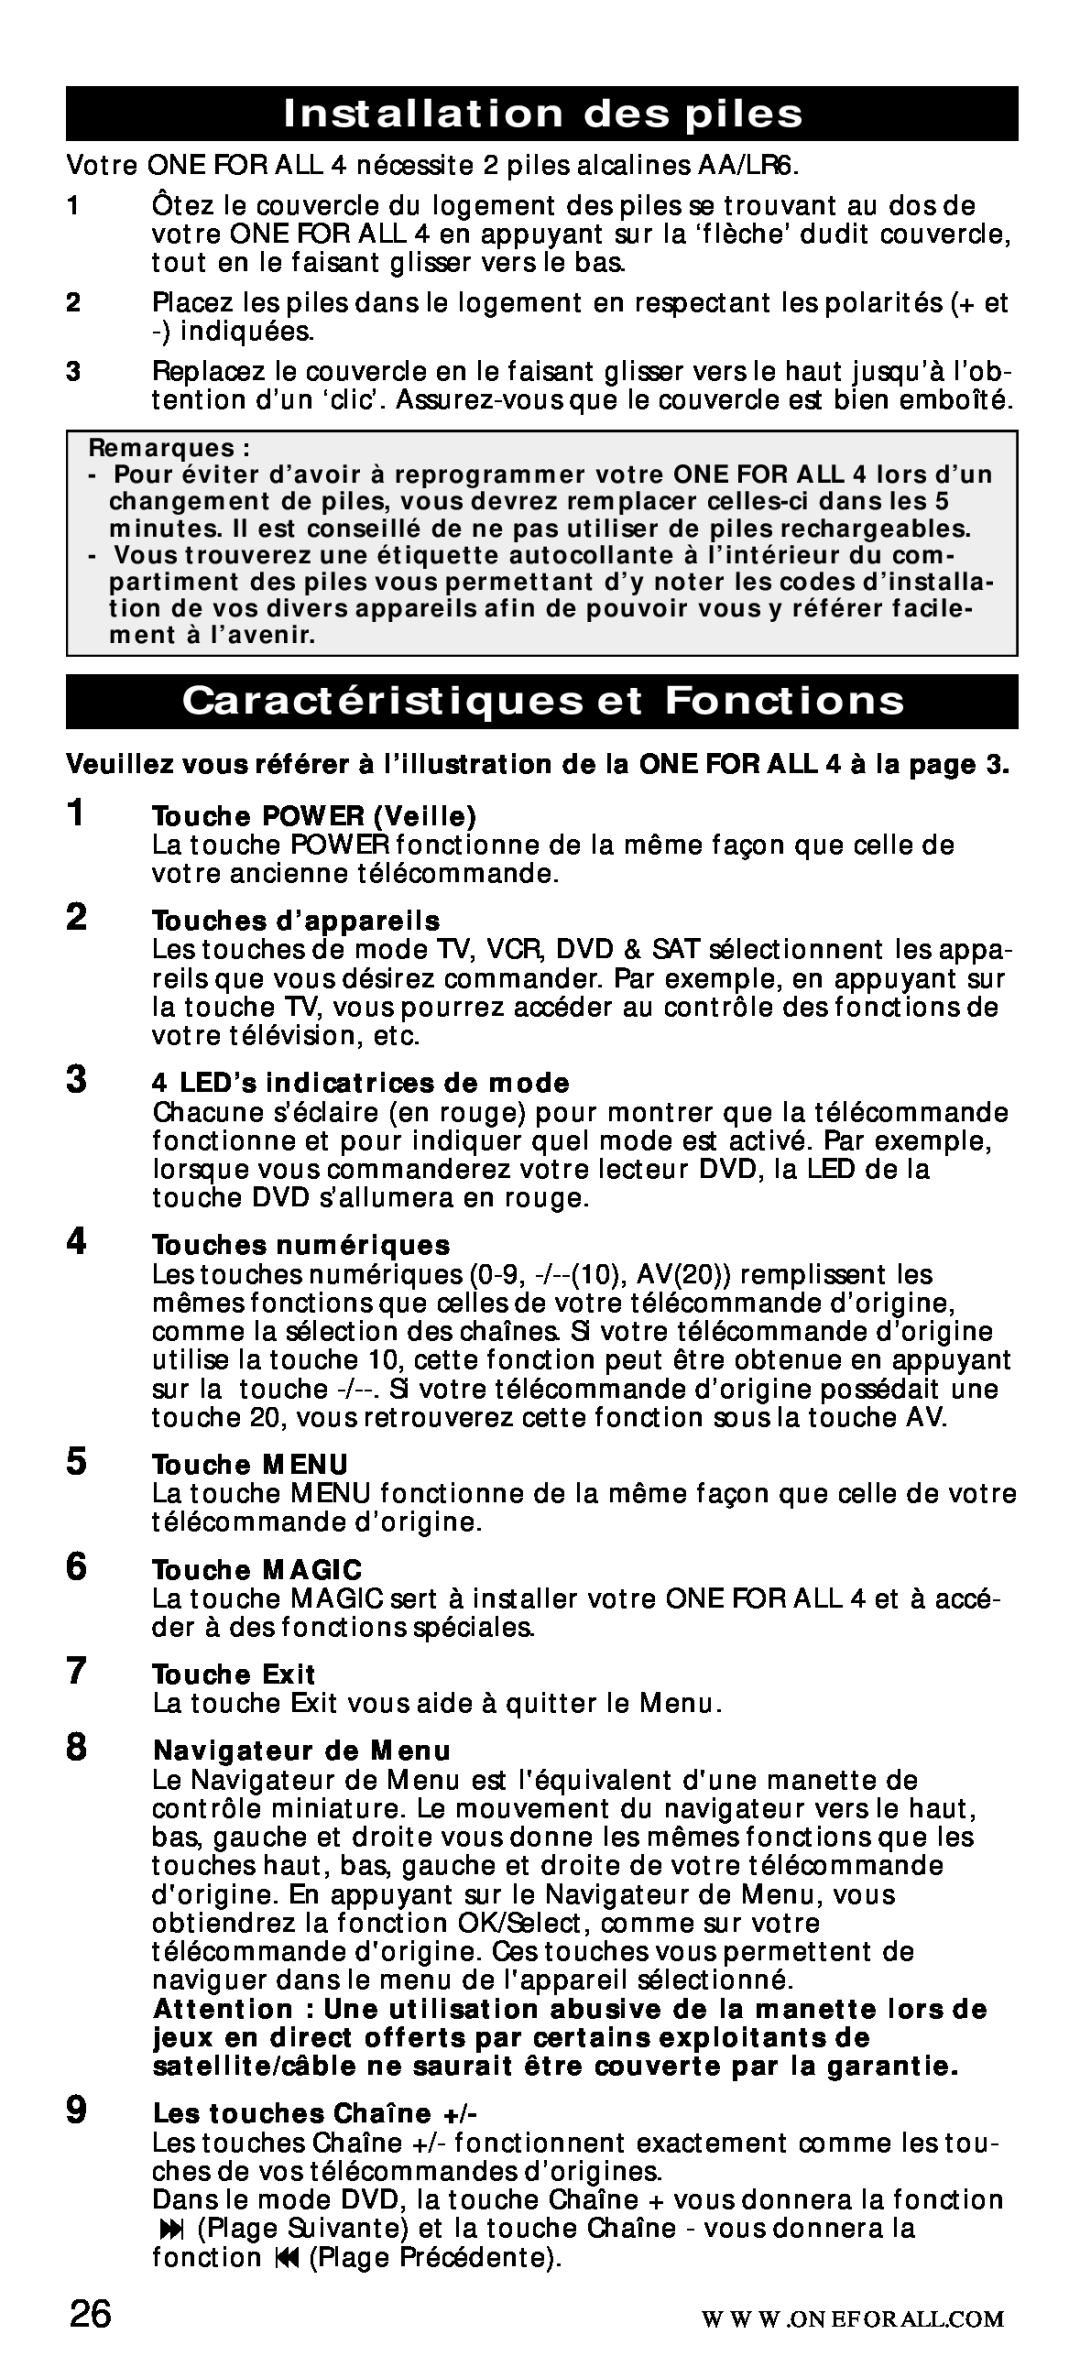 One for All URC-7040 manual Installation des piles, Caractéristiques et Fonctions 